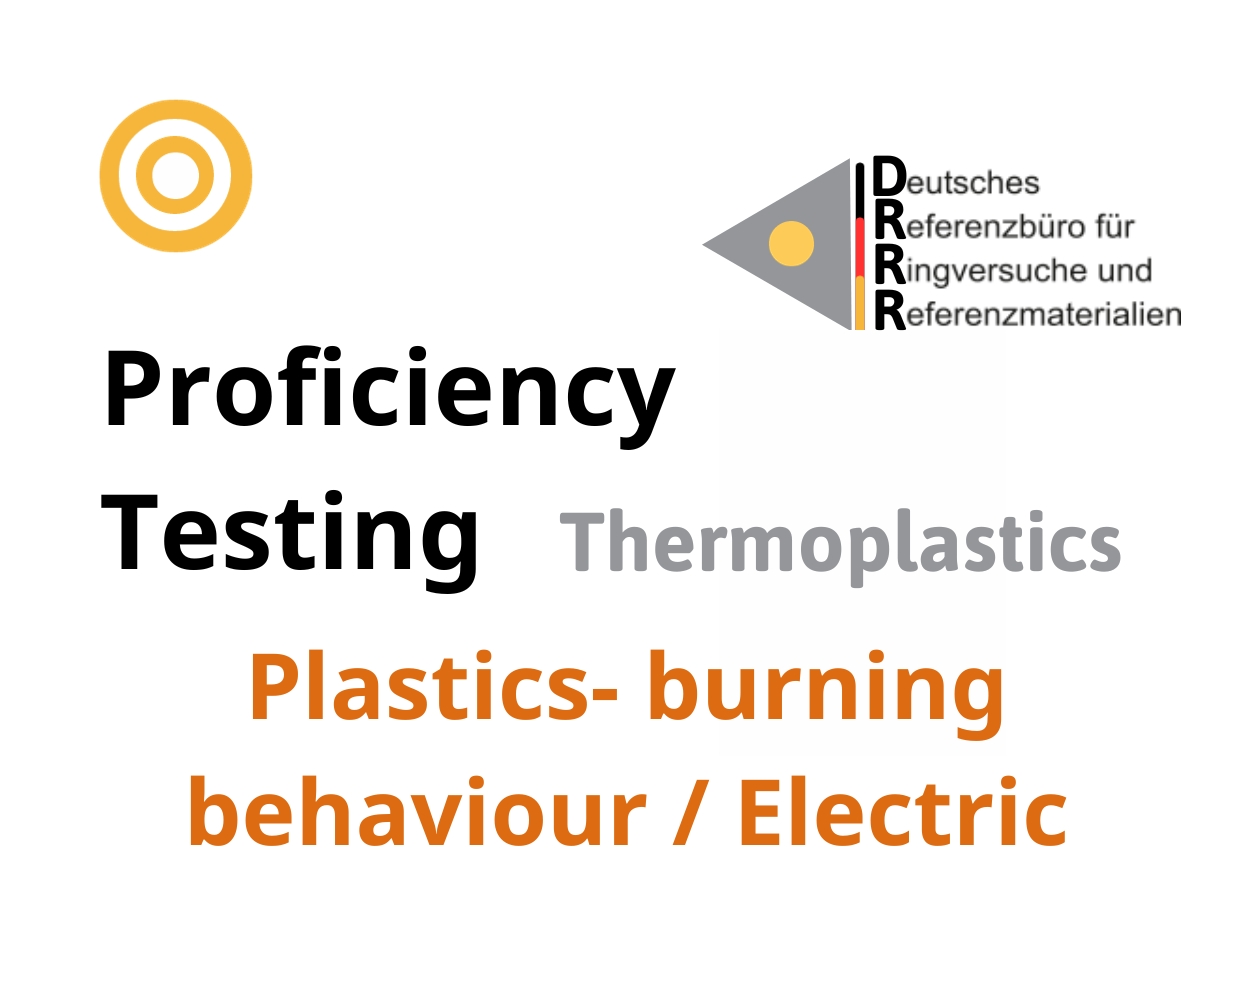 Thử nghiệm thành thạo (ISO 17043) nhựa nhiệt dẻo trên nền mẫu Plastics - burning behaviour / Electric, Hãng DRRR, Đức